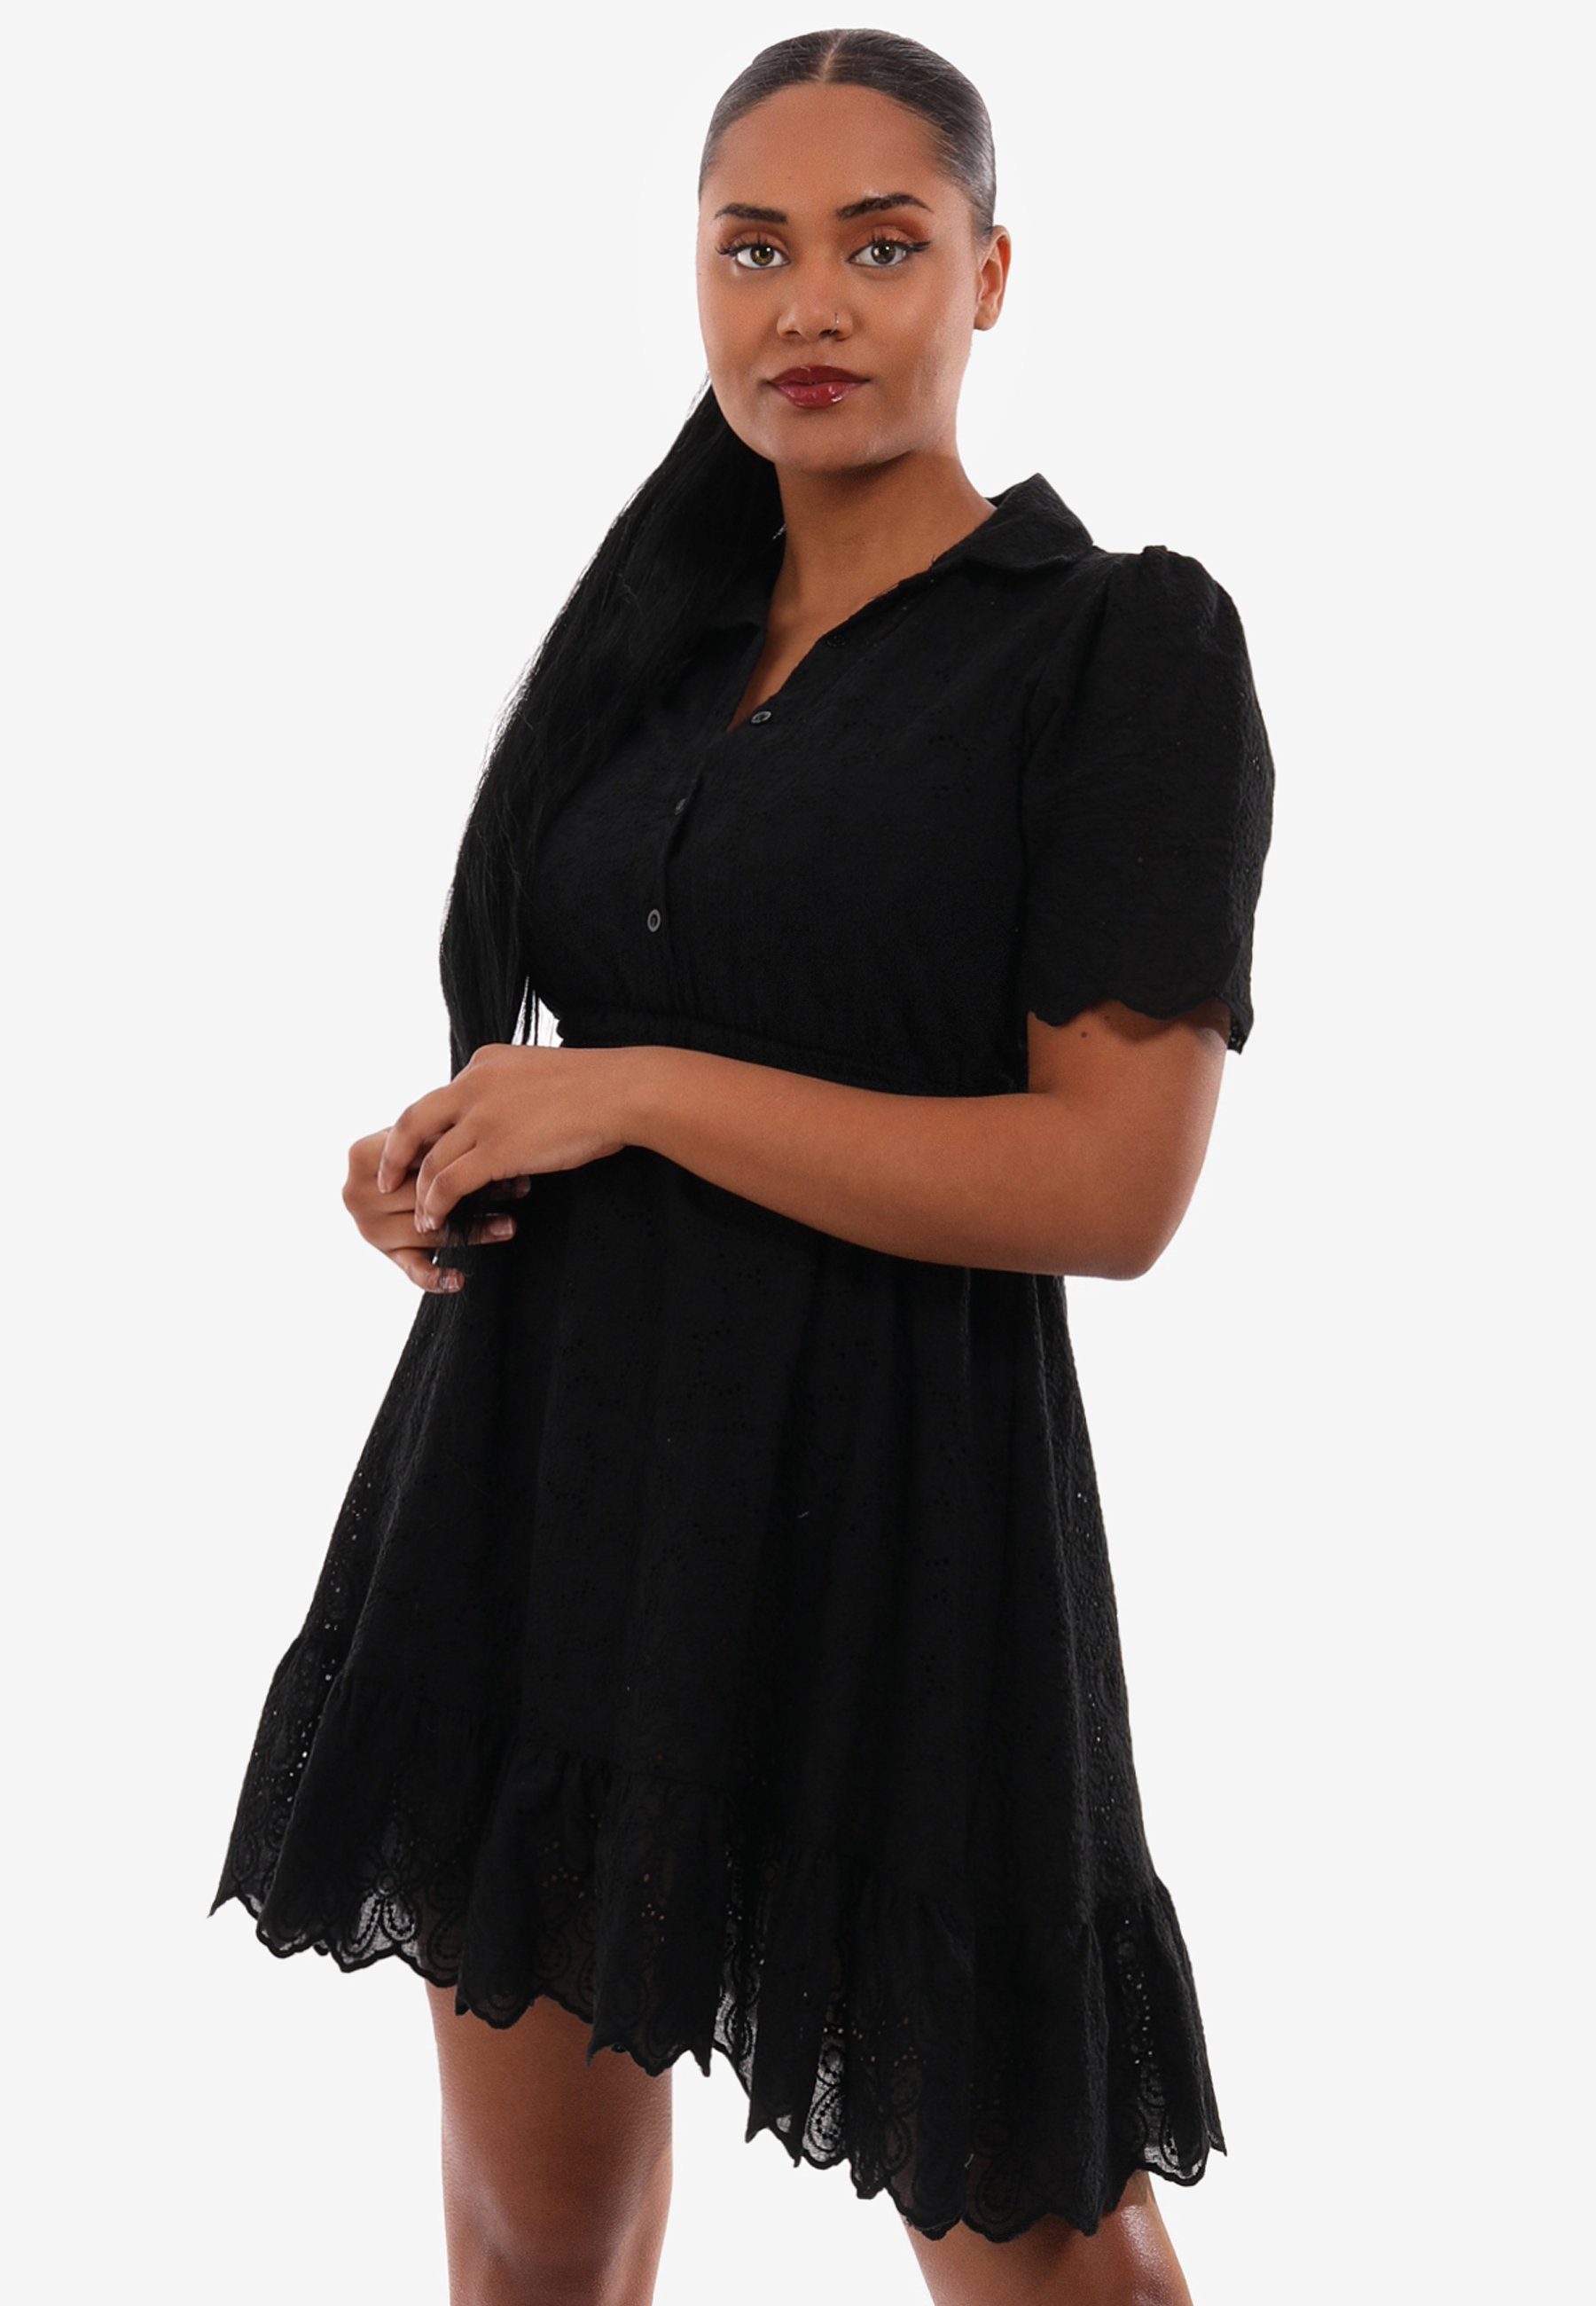 Minikleid mit Taillengürtel schwarz aus in Style Minikleid YC mit Fashion und Unifarbe, Spitze Volant Volant &